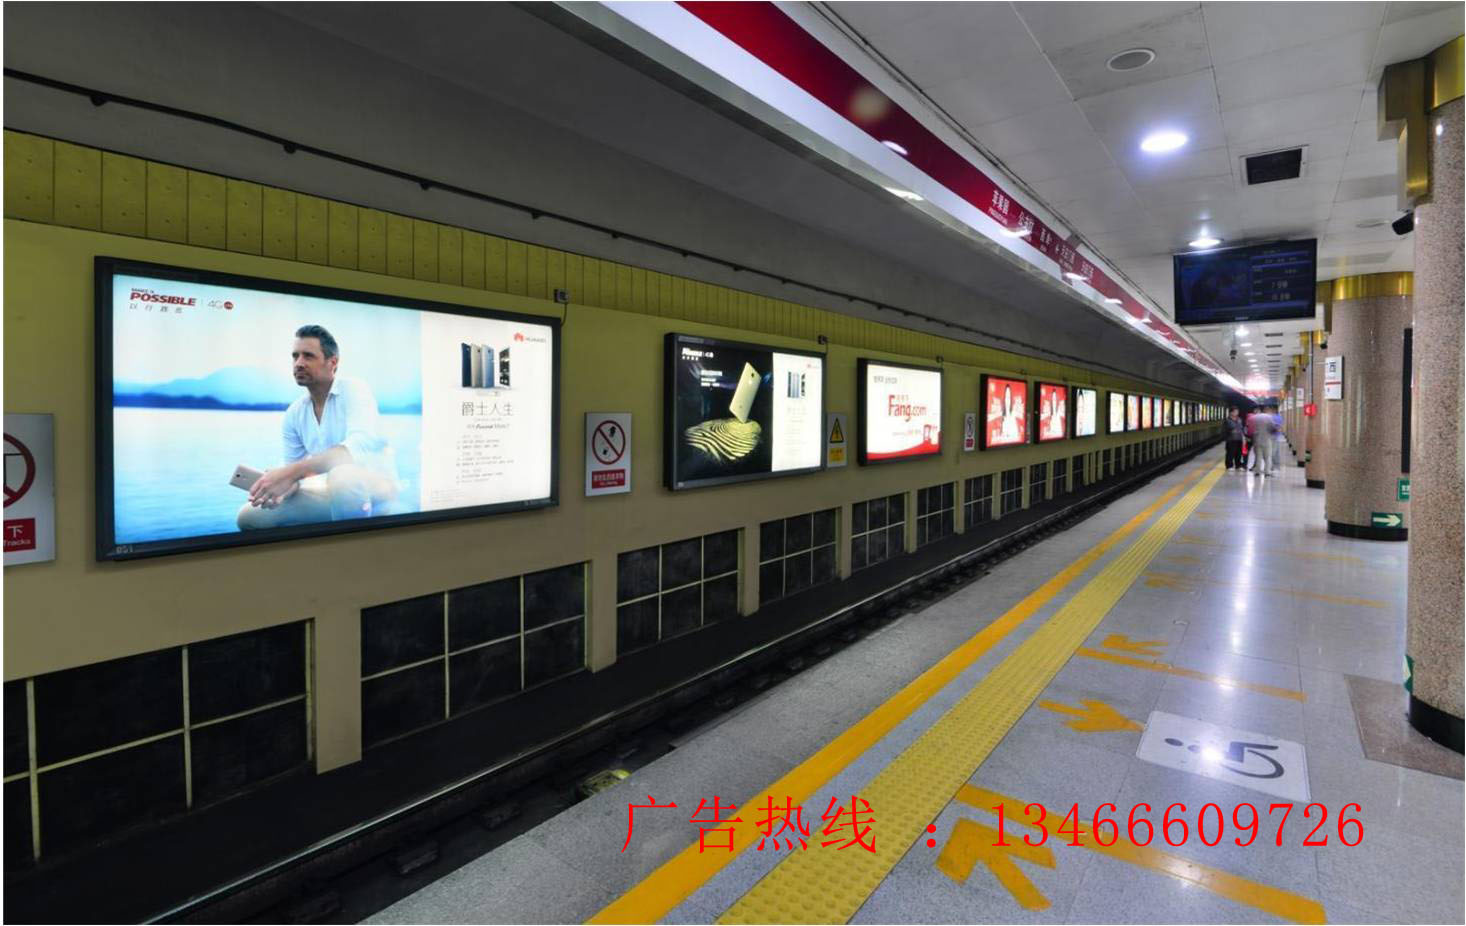 上海地铁惊现史上最长长长长长长长长长广告